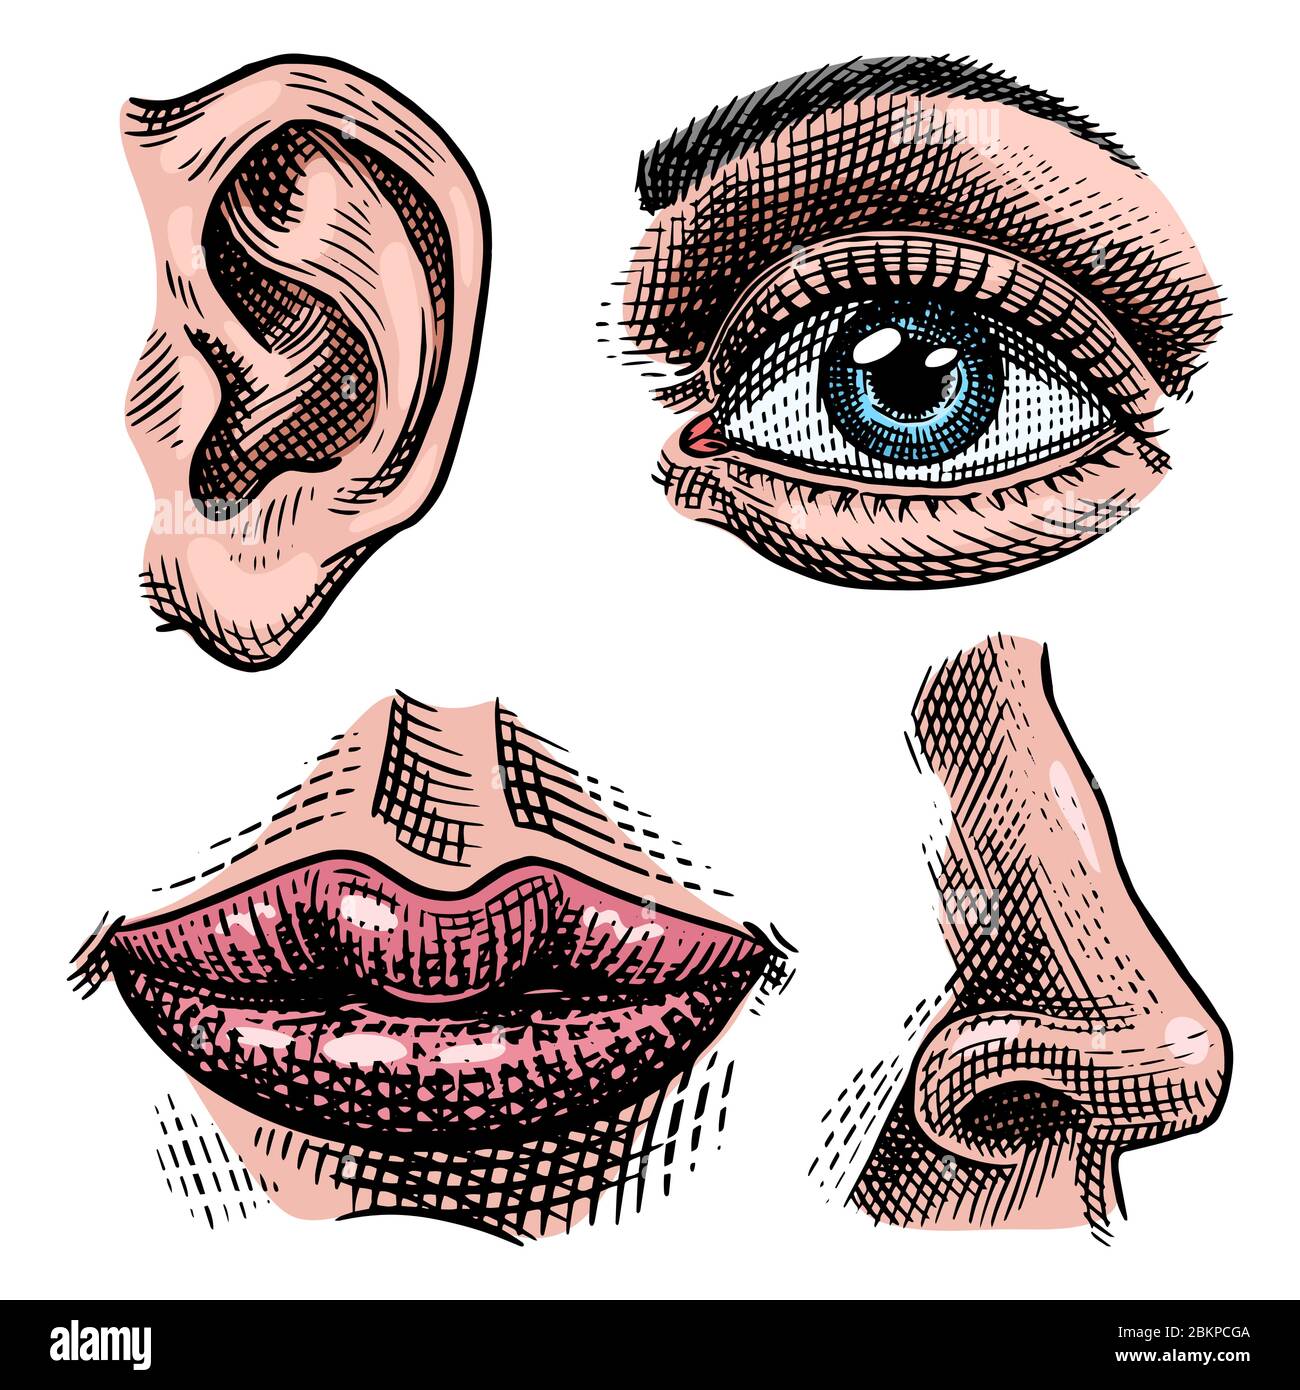 Abbildung der Anatomie der Organe. Gesicht detaillierte Kuss oder Lippen  und Ohr, Auge oder Blick, mit Nase aussehen. Menschliche Biologie im  Vintage-Stil. Handgezeichnet Stock-Vektorgrafik - Alamy